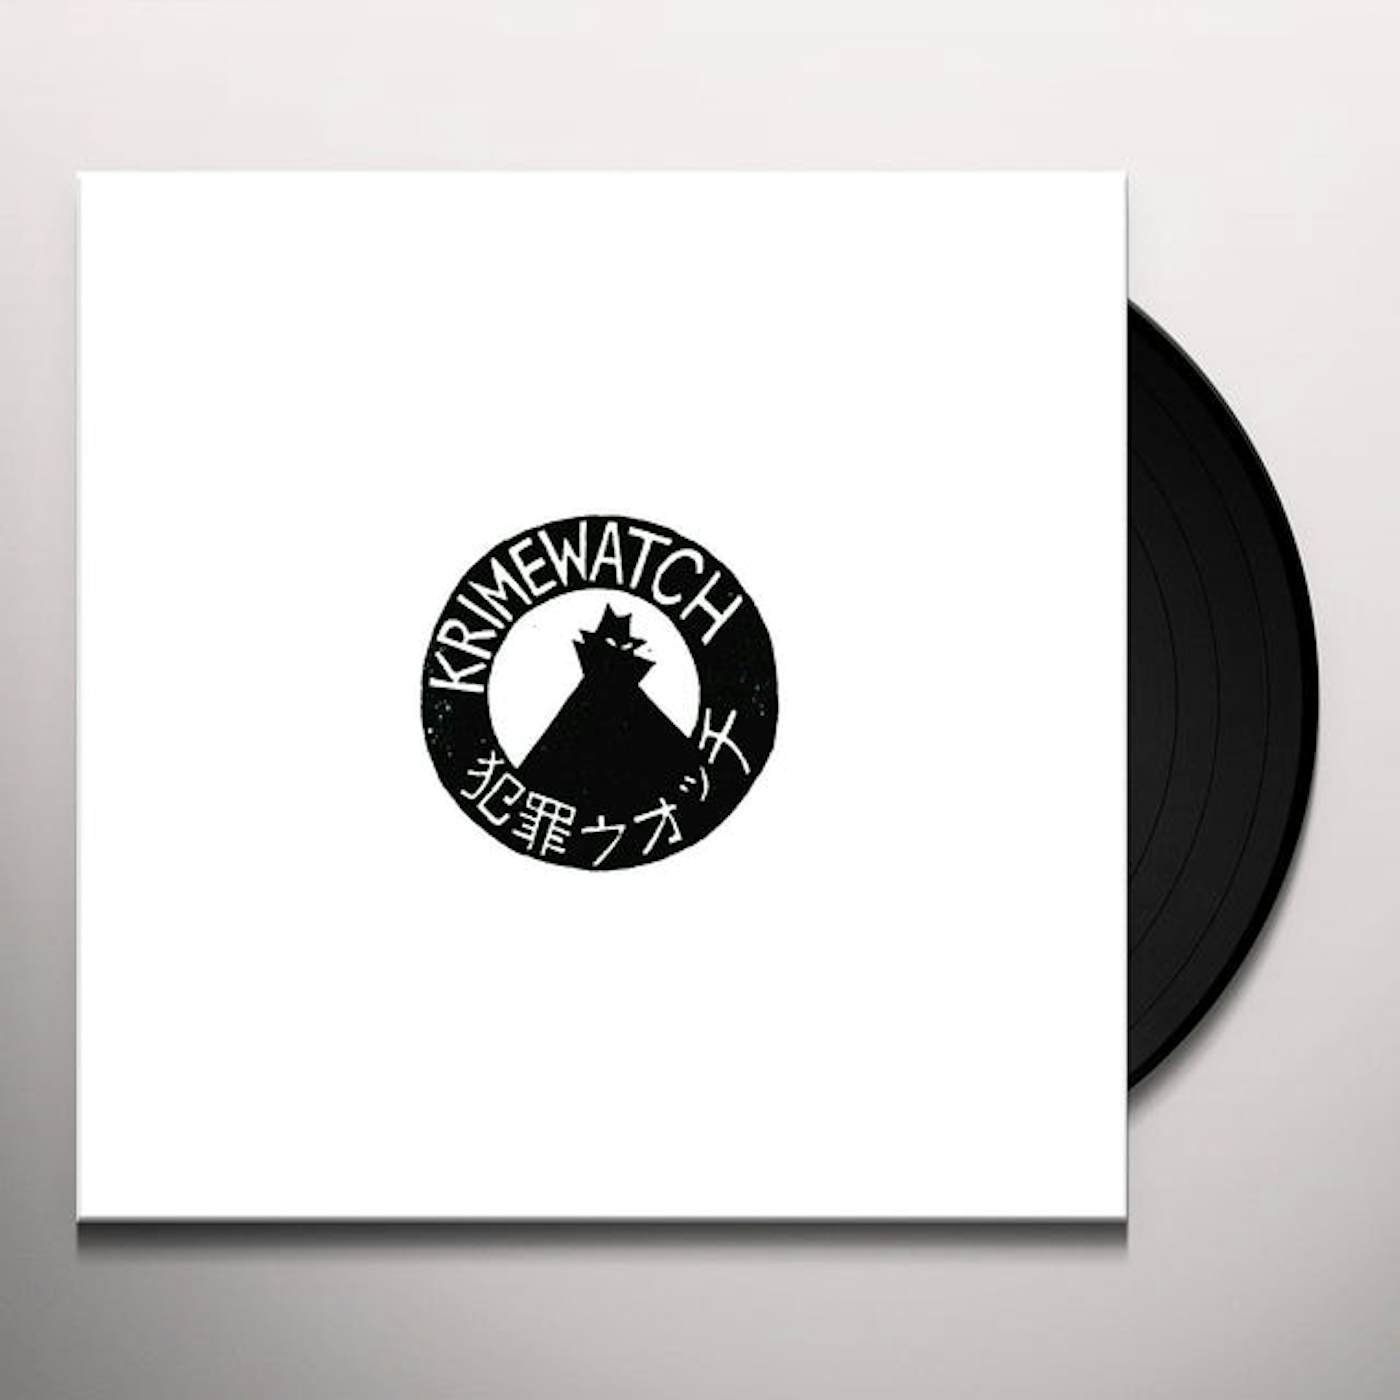 Krimewatch Vinyl Record